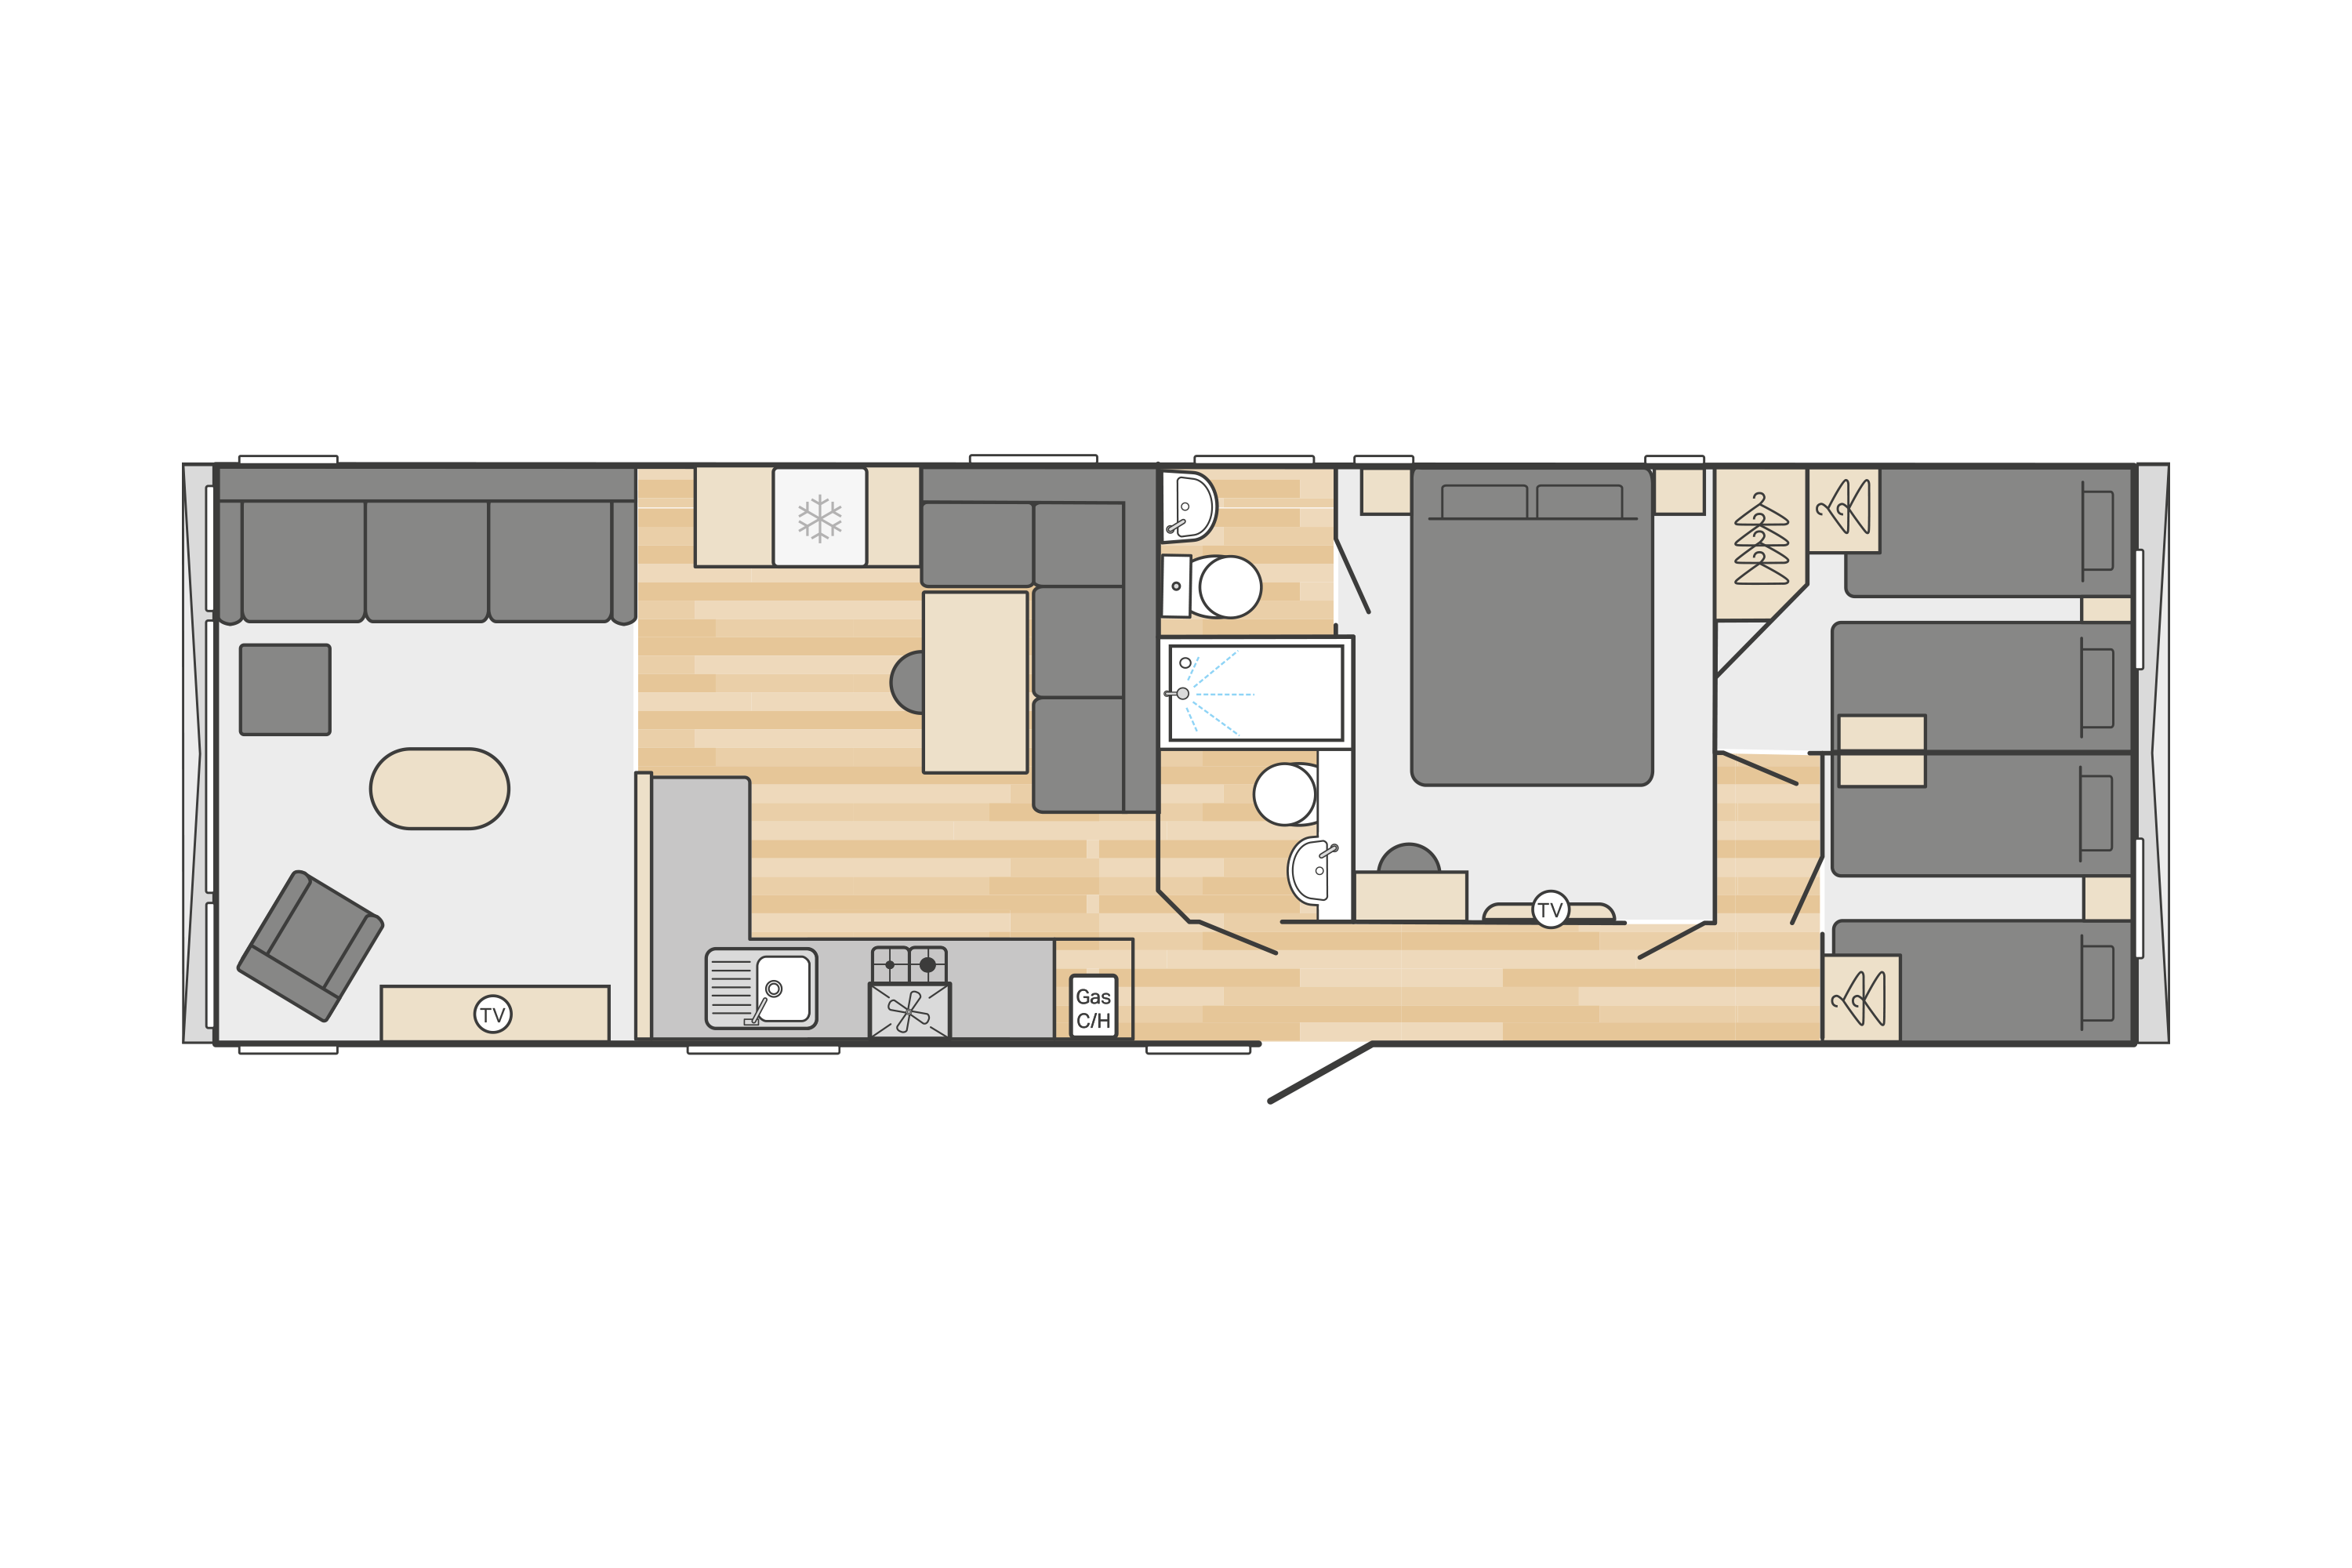 Moselle (scandi) 40' x 12' - 3 Bedroom floorplan